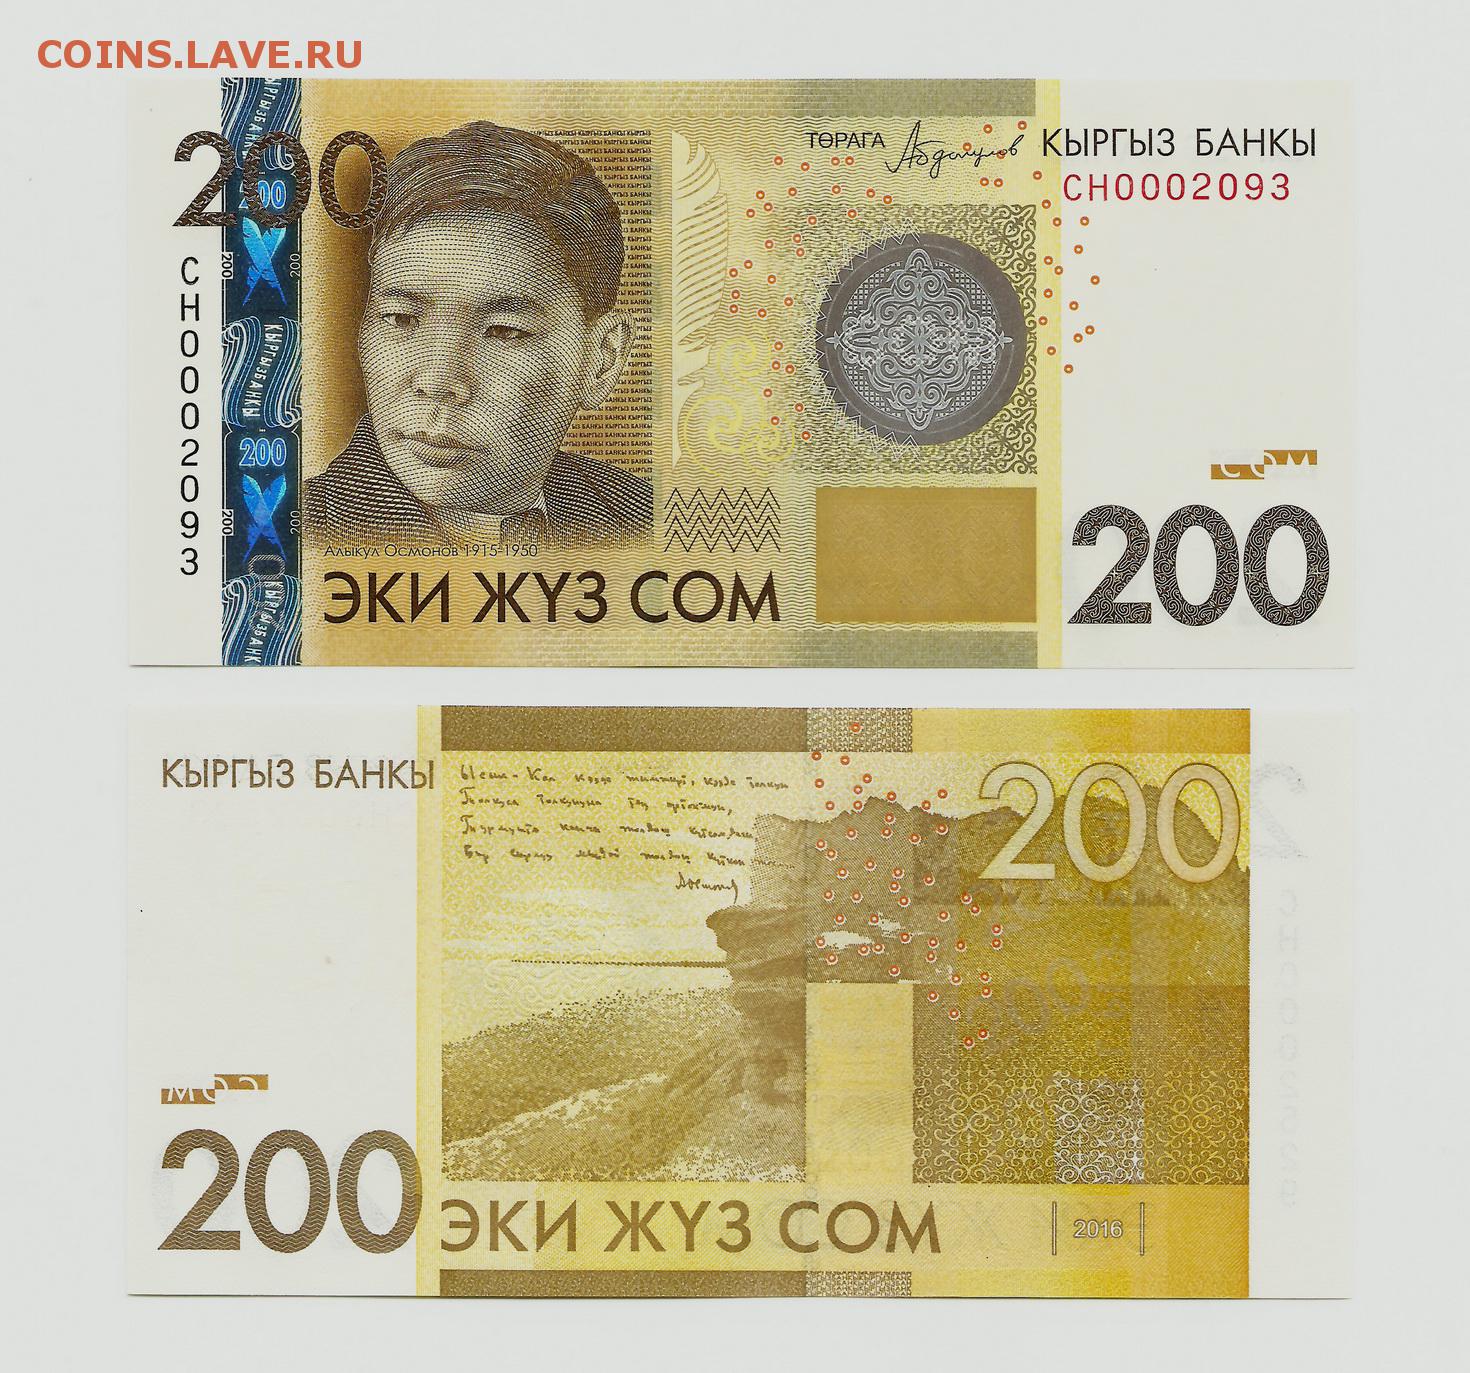 Киргизский сум. 2000 Сом Киргизия. Кыргызский 200 сом. Валюта Кыргызстана 200 сом. Киргизский сом 2017.